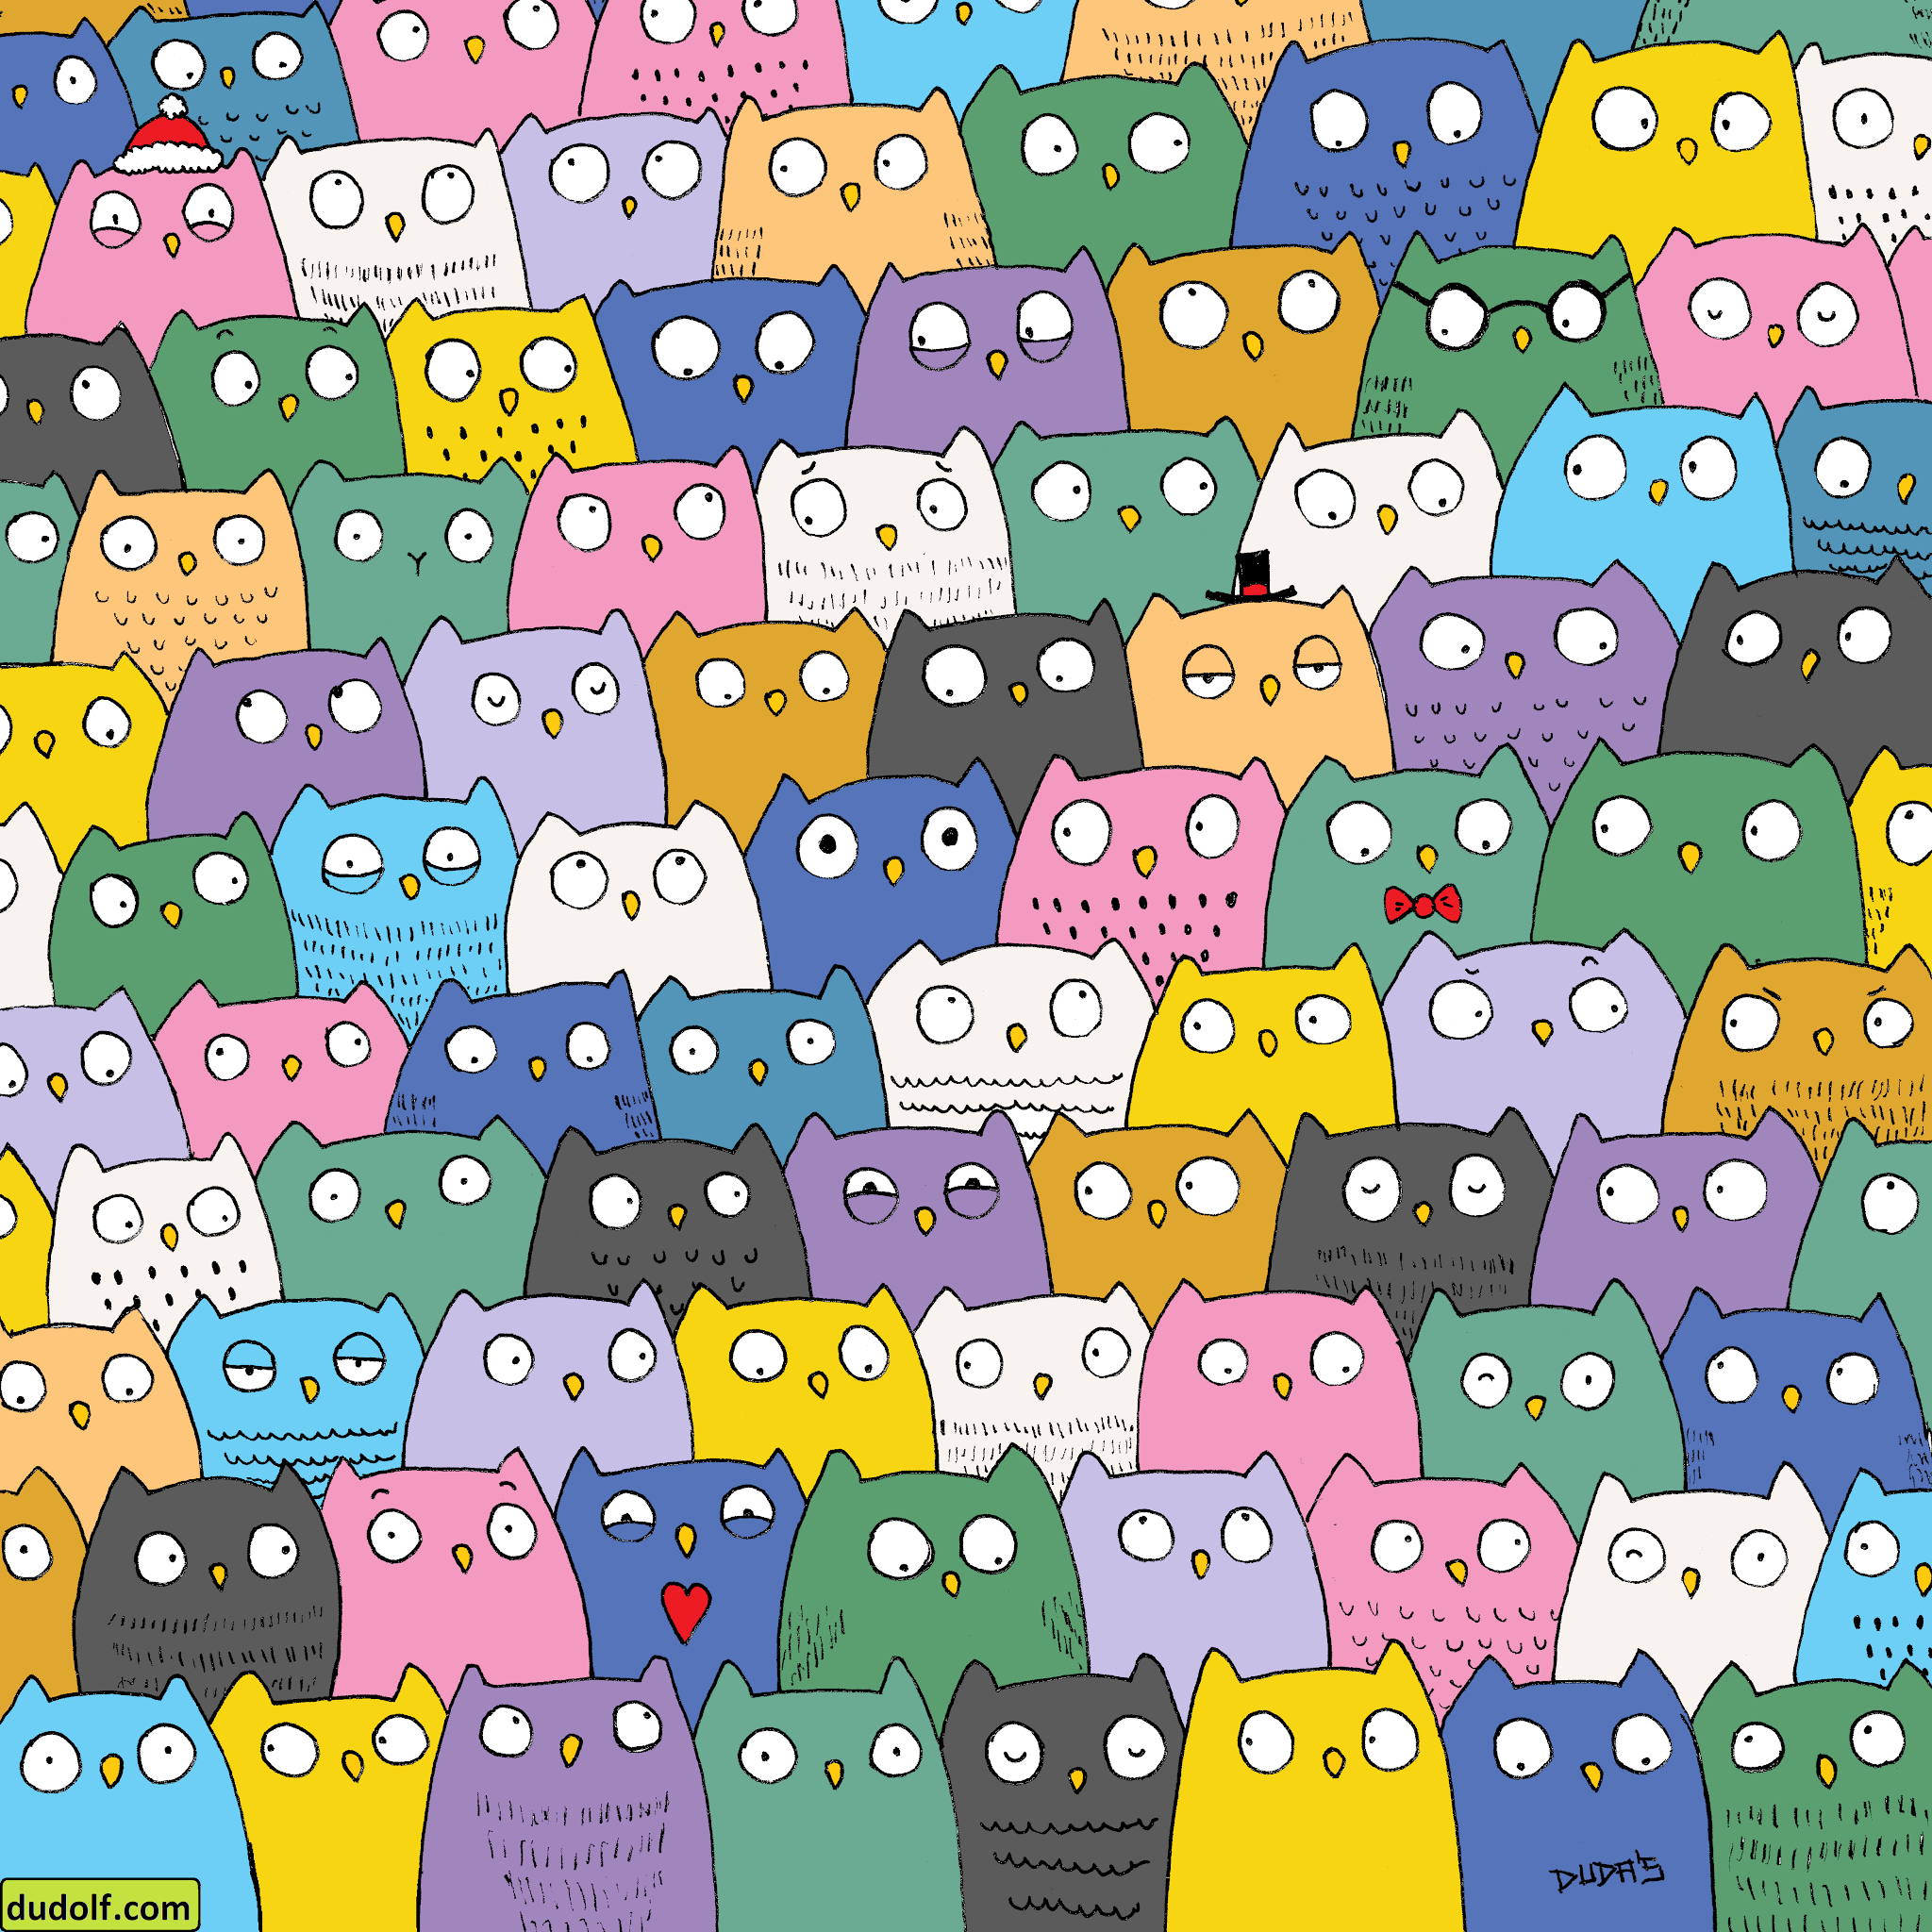 RETO VISUAL: ¿Puedes encontrar al gatito entre el montón de búhos?